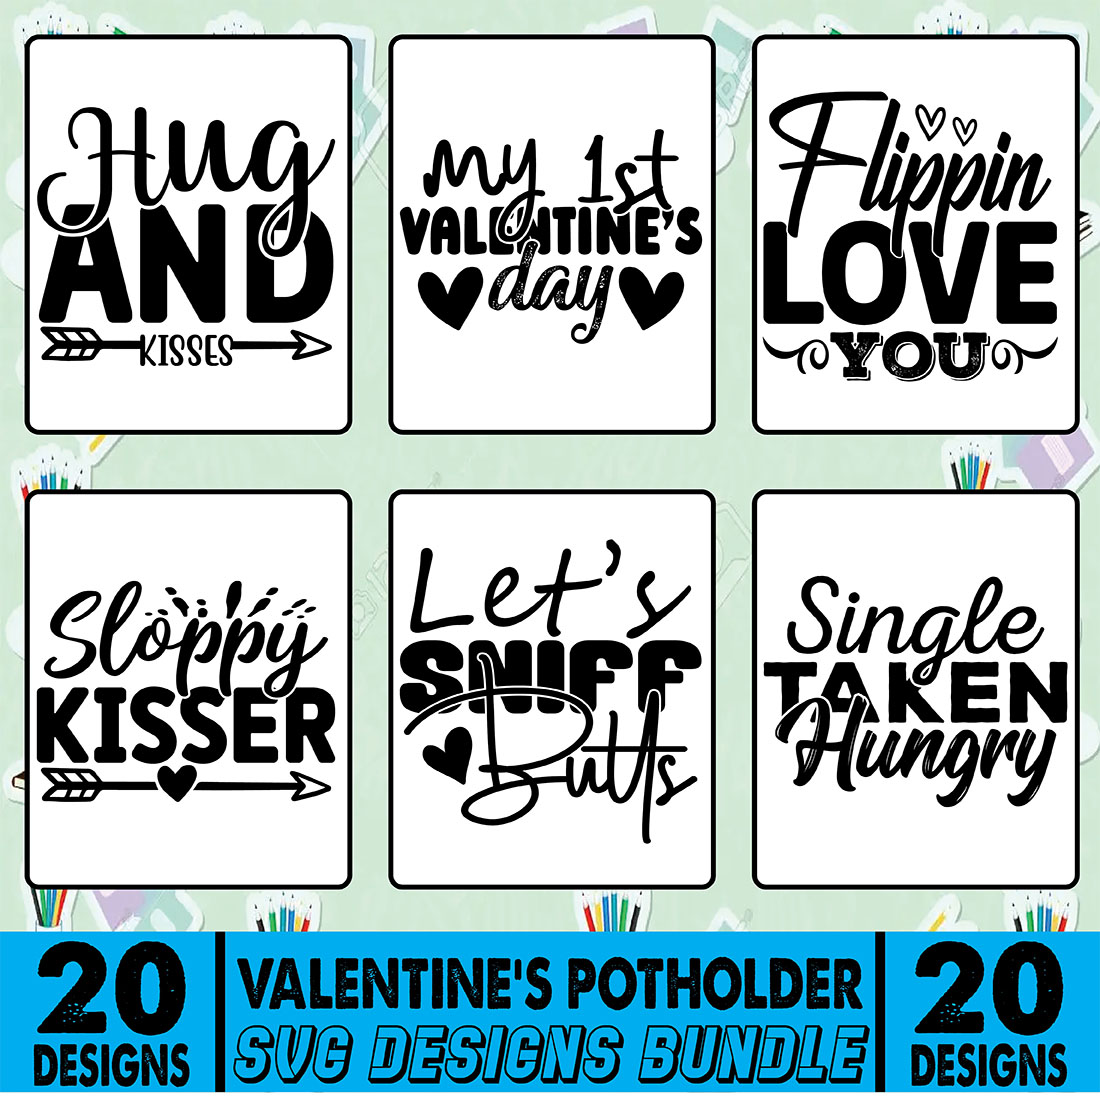 20 Valentines Potholder SVG Design Bundle cover